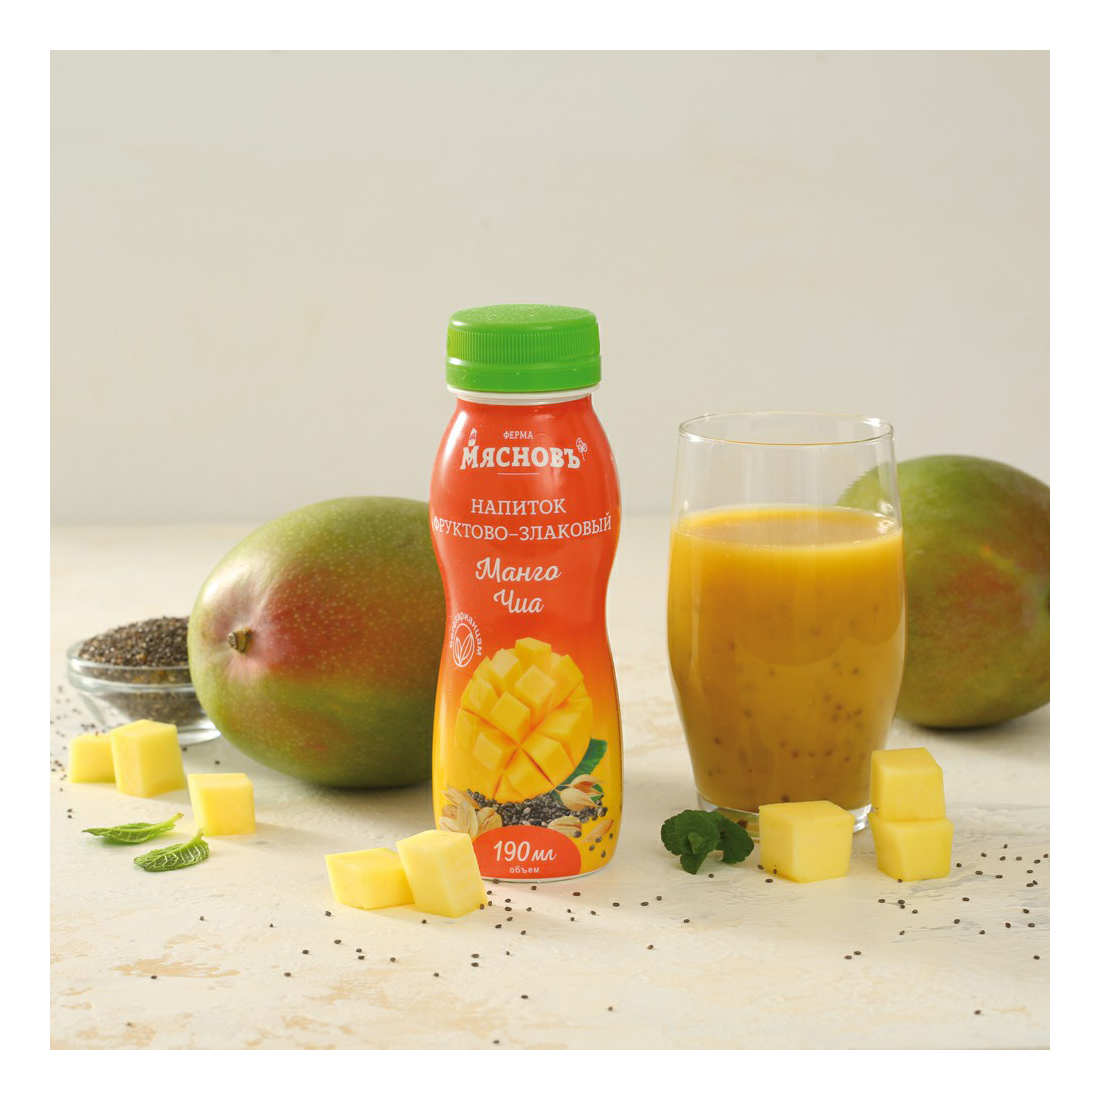 Растительный напиток МясновЪ ФЕРМА фруктово-злаковый с манго и чиа 190 мл